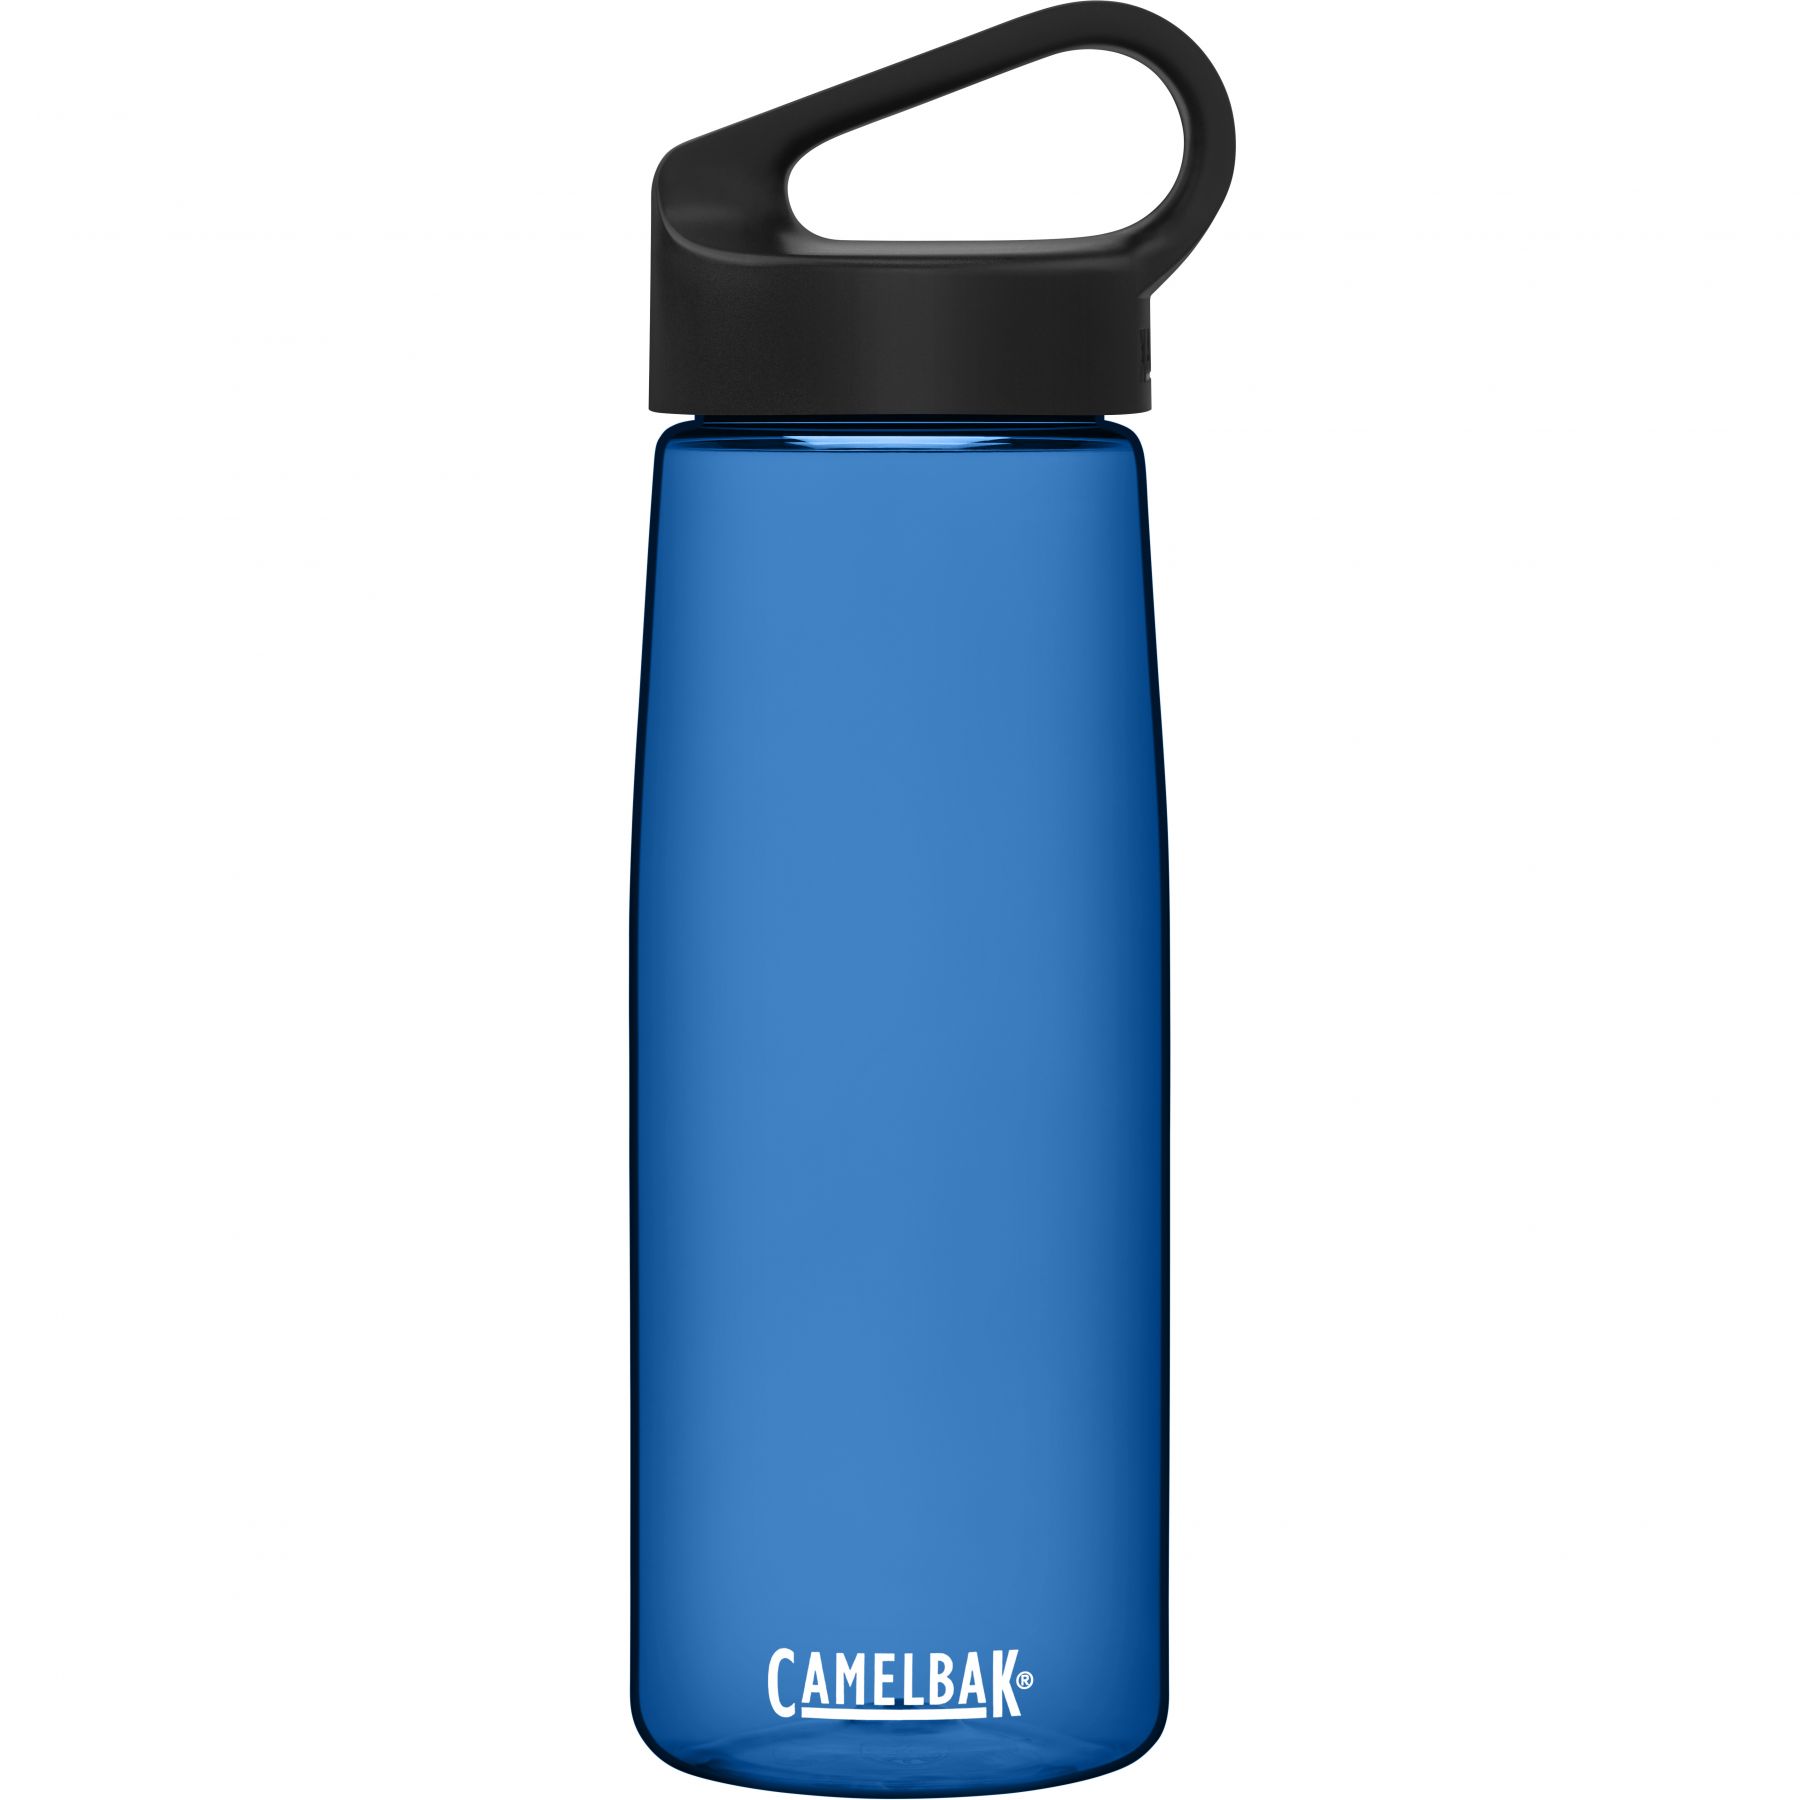 Billede af CamelBak Carry Cap, drikkedunk, 0,75L, blå hos Skisport.dk